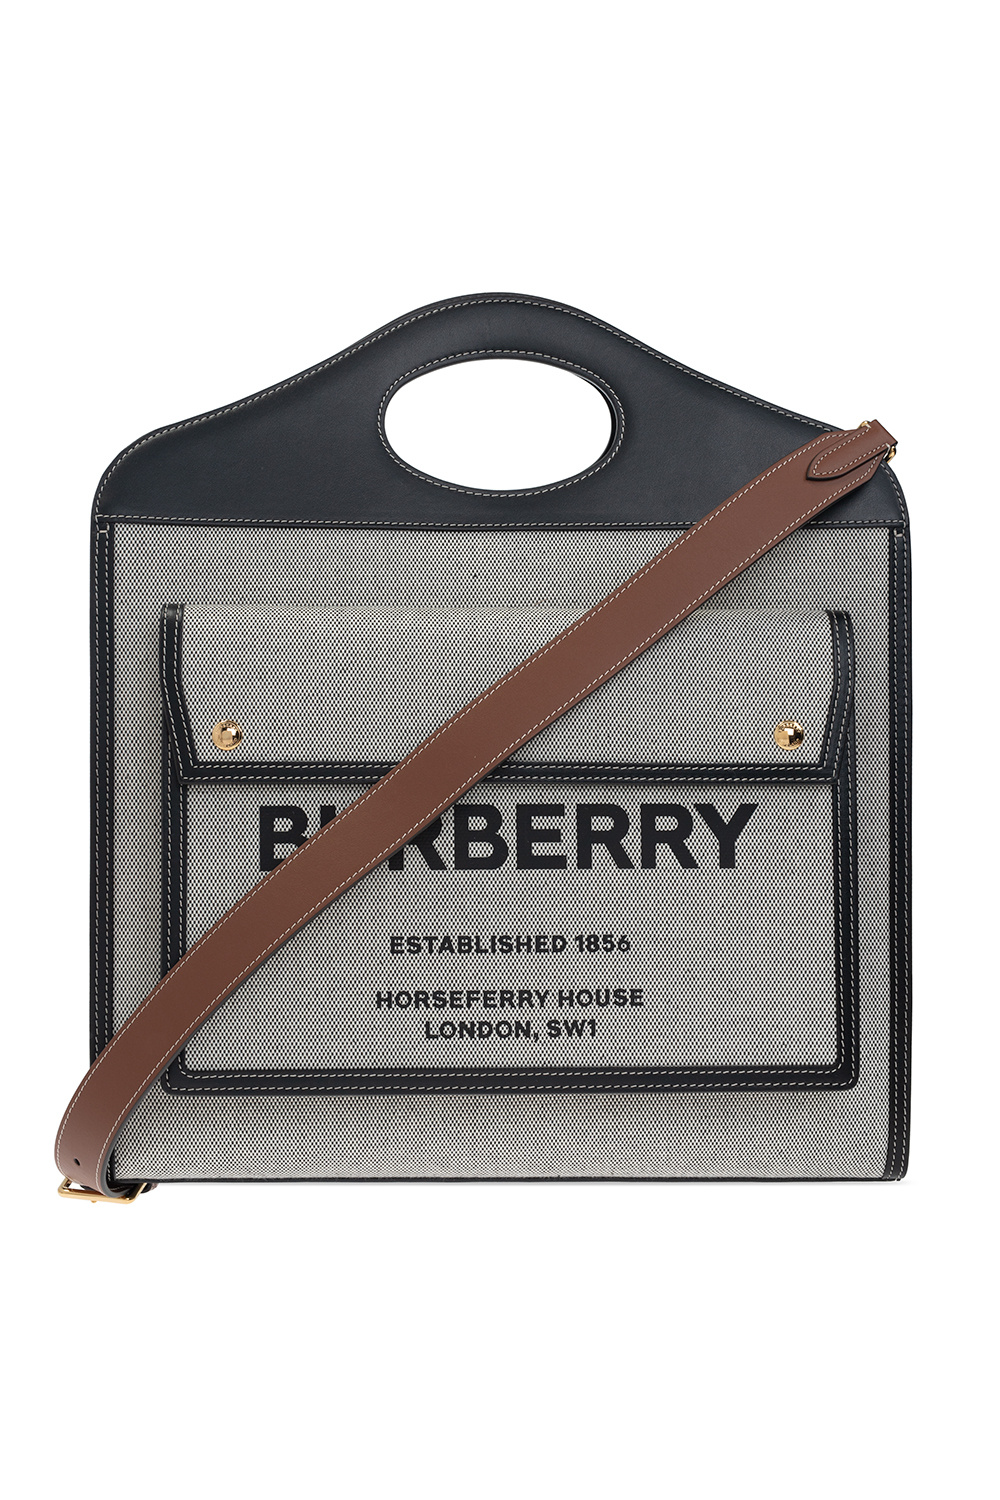 Burberry Black/Beige House Check PVC Flap Shoulder Bag Burberry | The  Luxury Closet